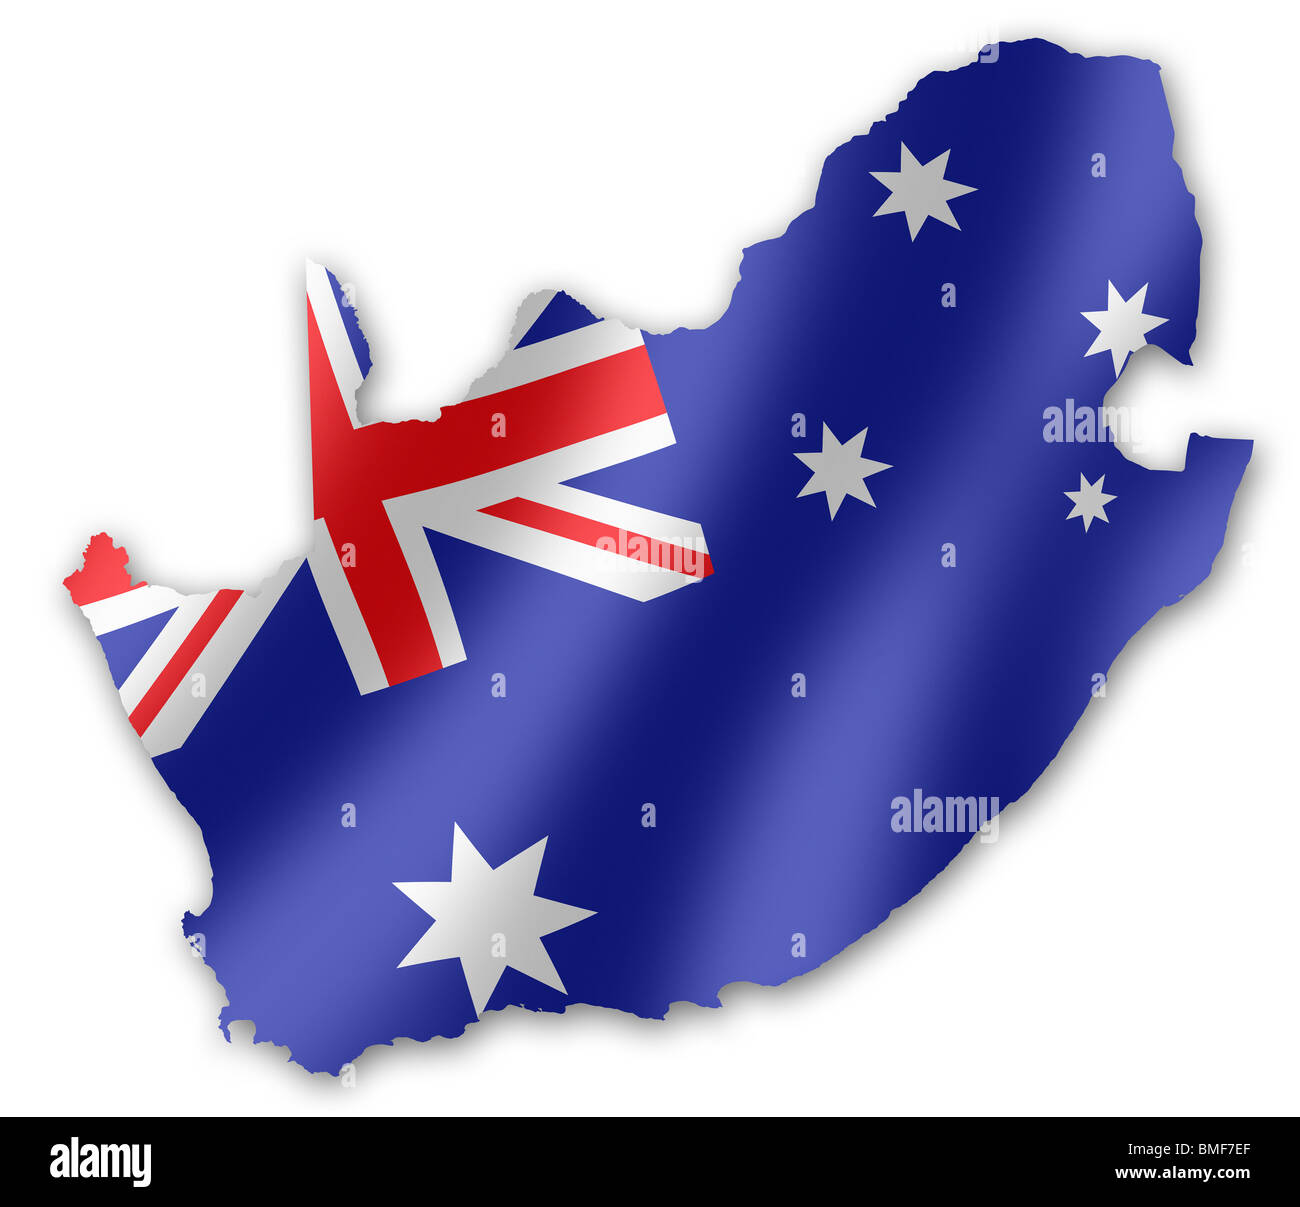 Mappa del Sud Africa con la bandiera australiana inset, per la Coppa del Mondo FIFA 2010 Football Foto Stock